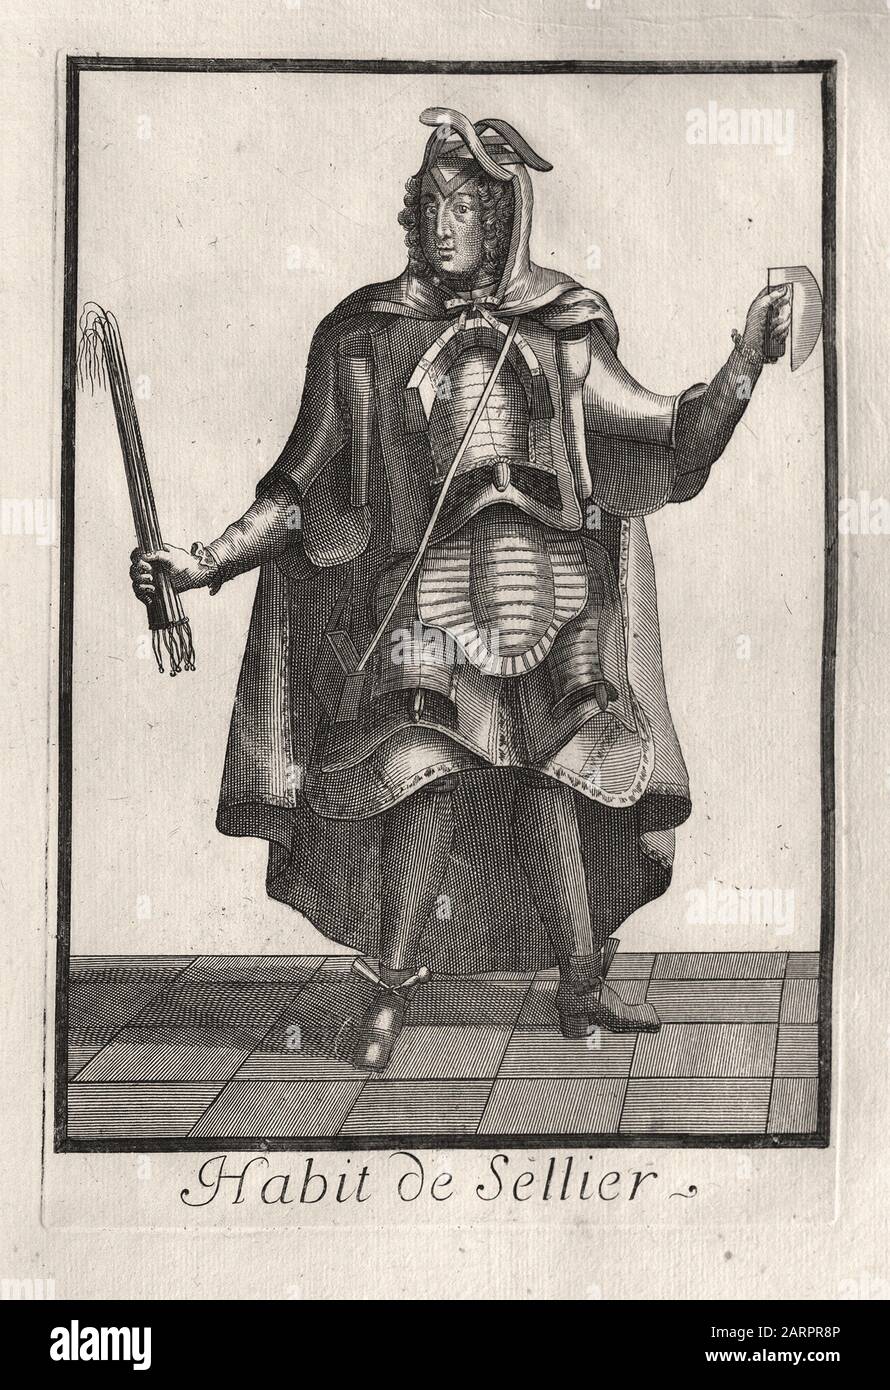 Vestido del Saddler - grabado francés a finales del siglo 17 Foto de stock